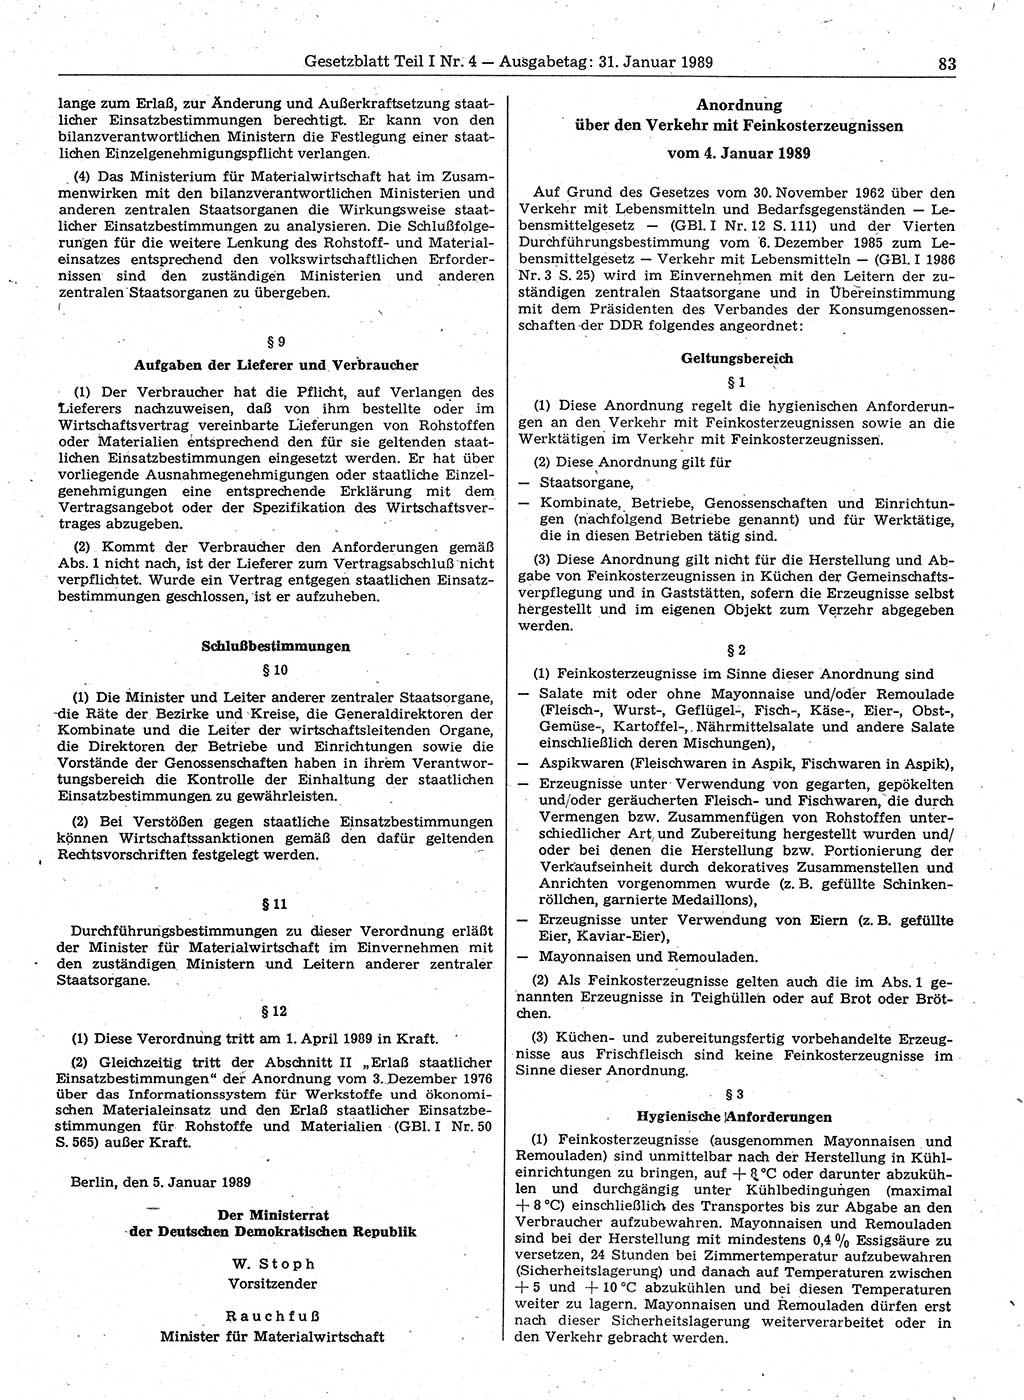 Gesetzblatt (GBl.) der Deutschen Demokratischen Republik (DDR) Teil Ⅰ 1989, Seite 83 (GBl. DDR Ⅰ 1989, S. 83)